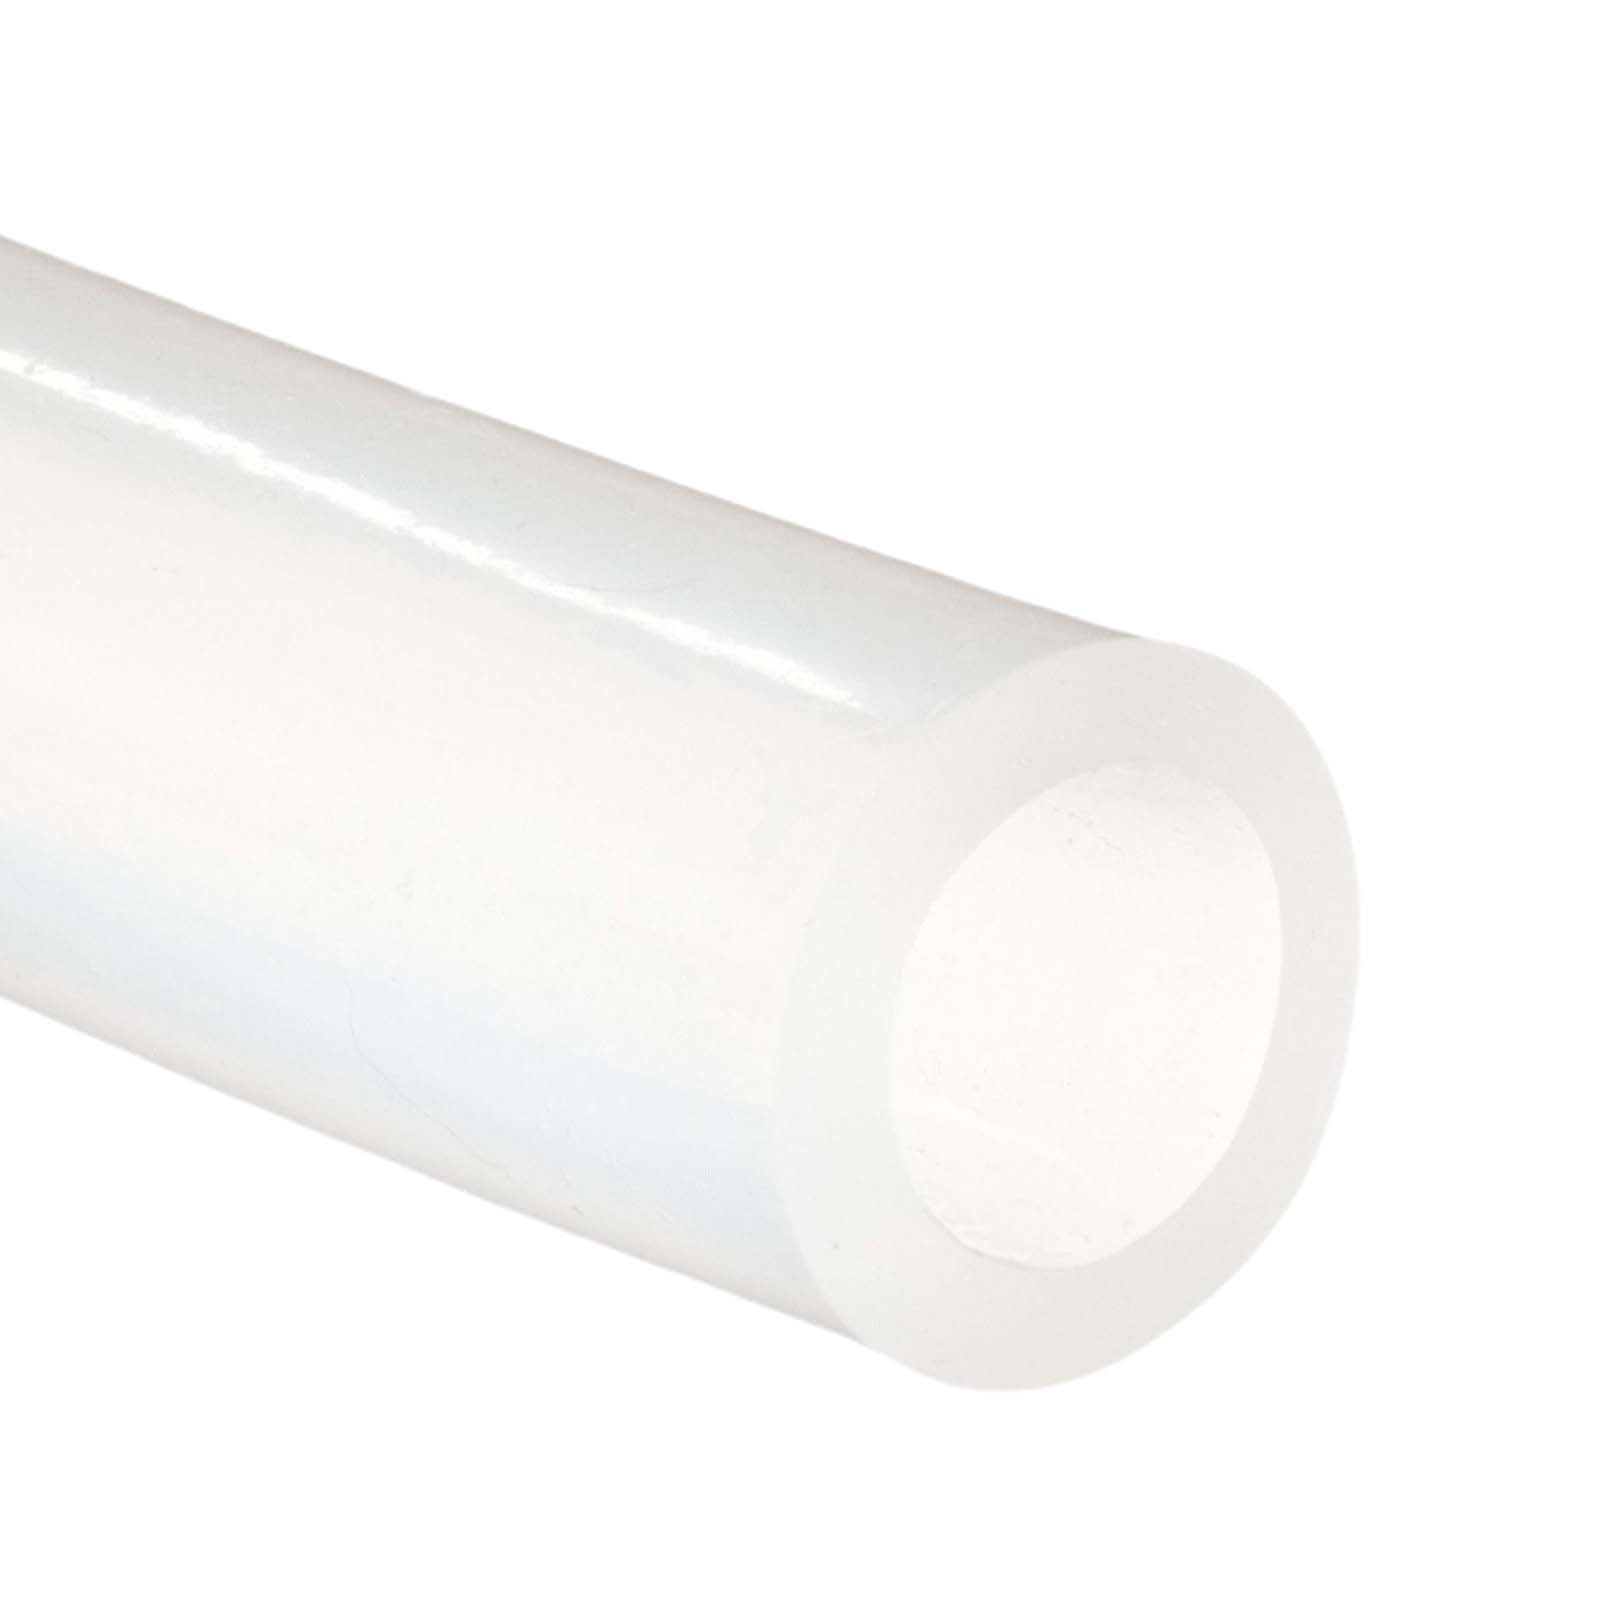 Silikonschlauch FDA Lebensmittel Ø 6x9 mm transparent Schlauch Milchschlauch Wasserschlauch 